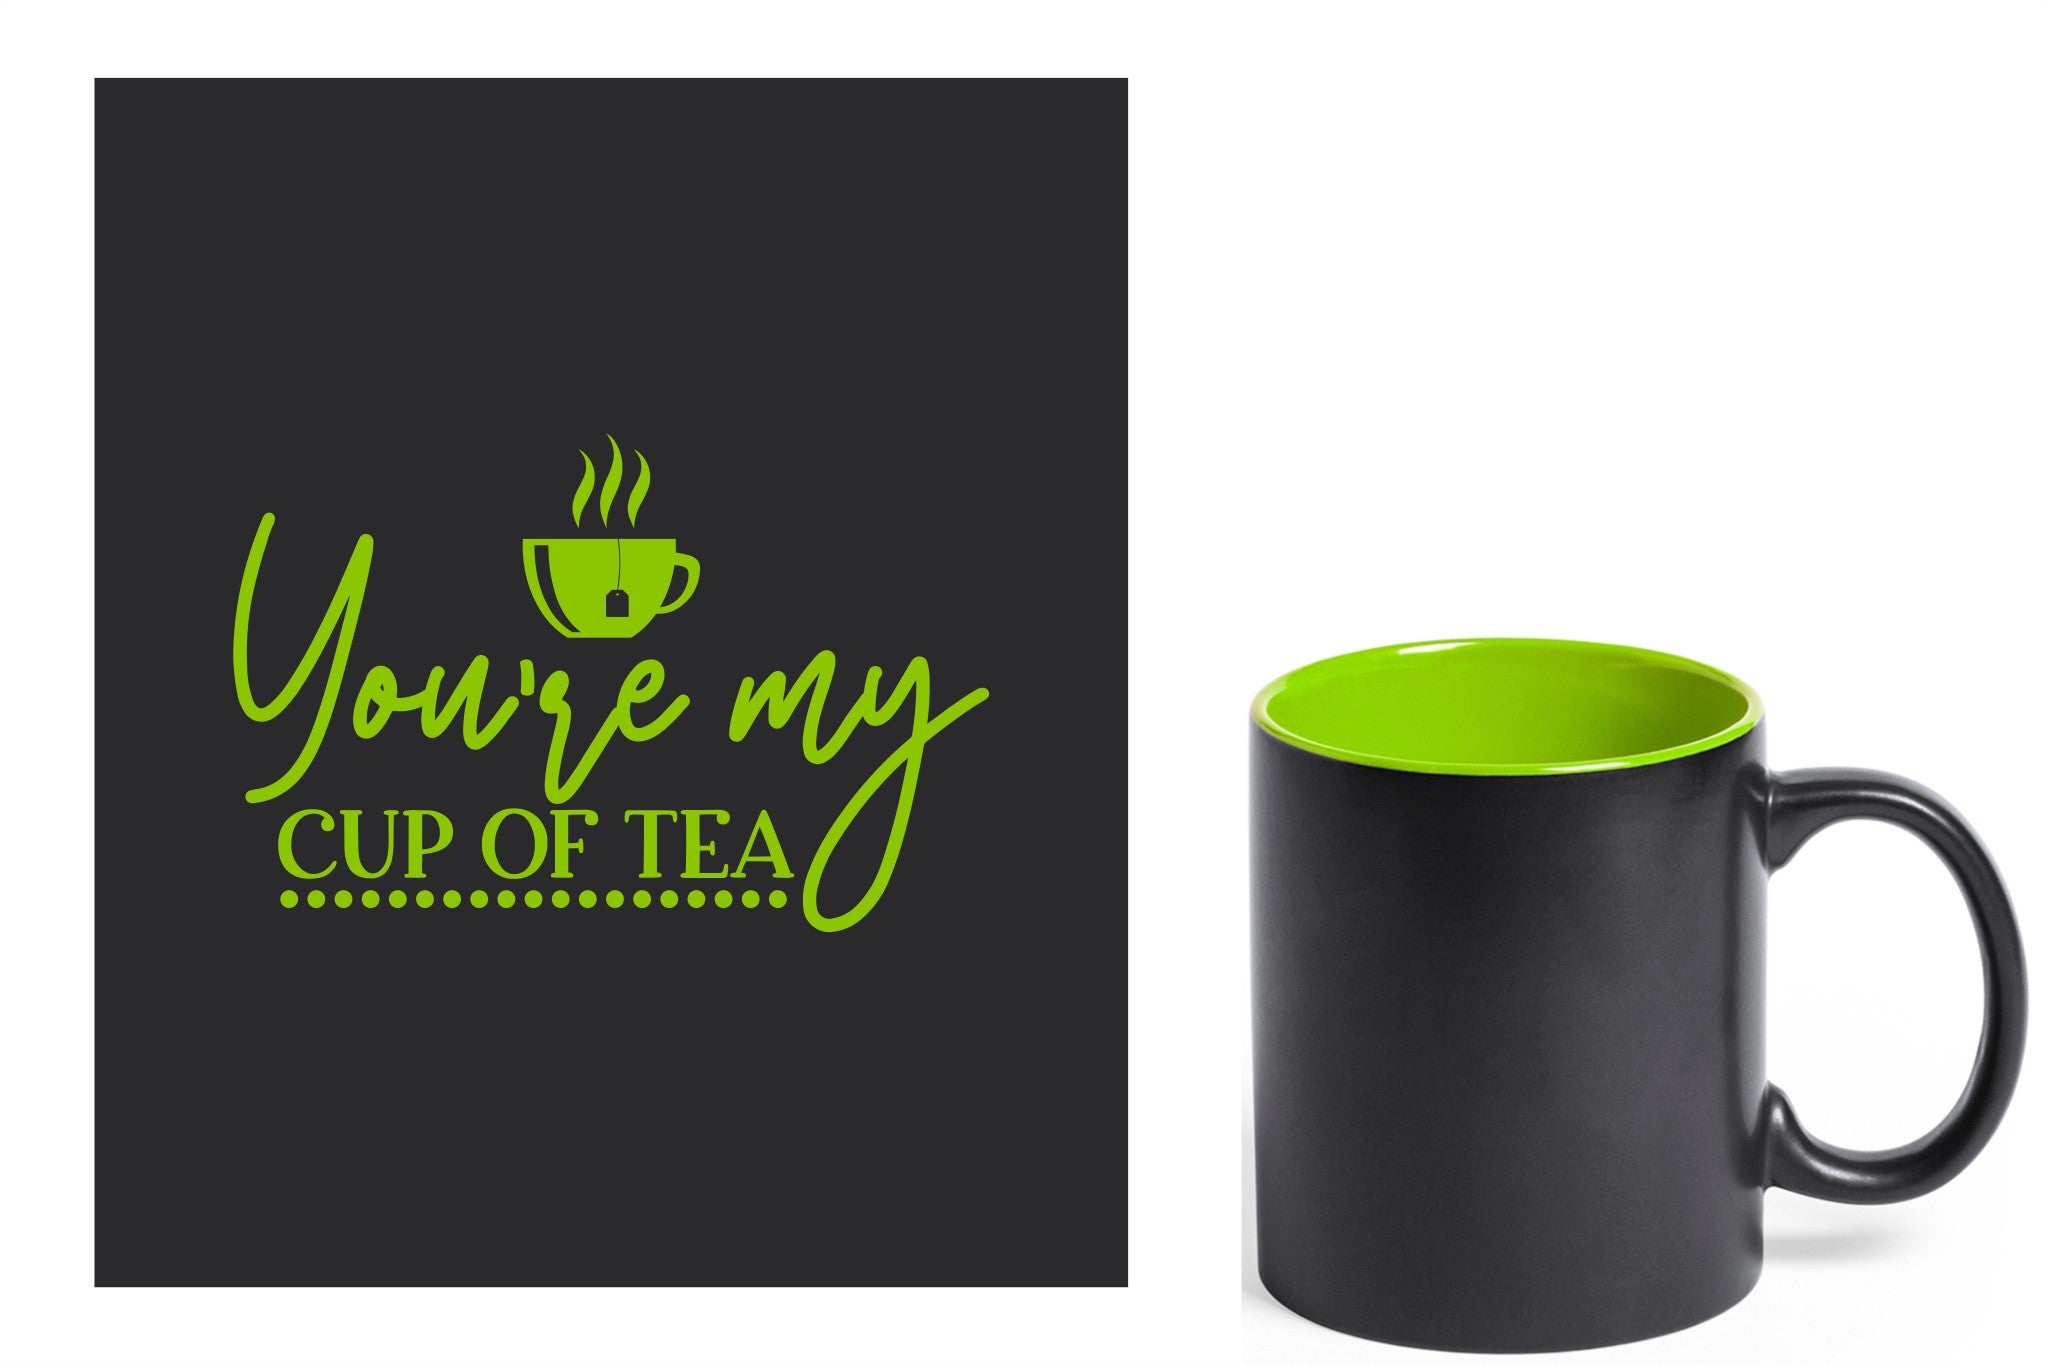 zwarte keramische mok met groene gravure  'You're my cup of tea'.